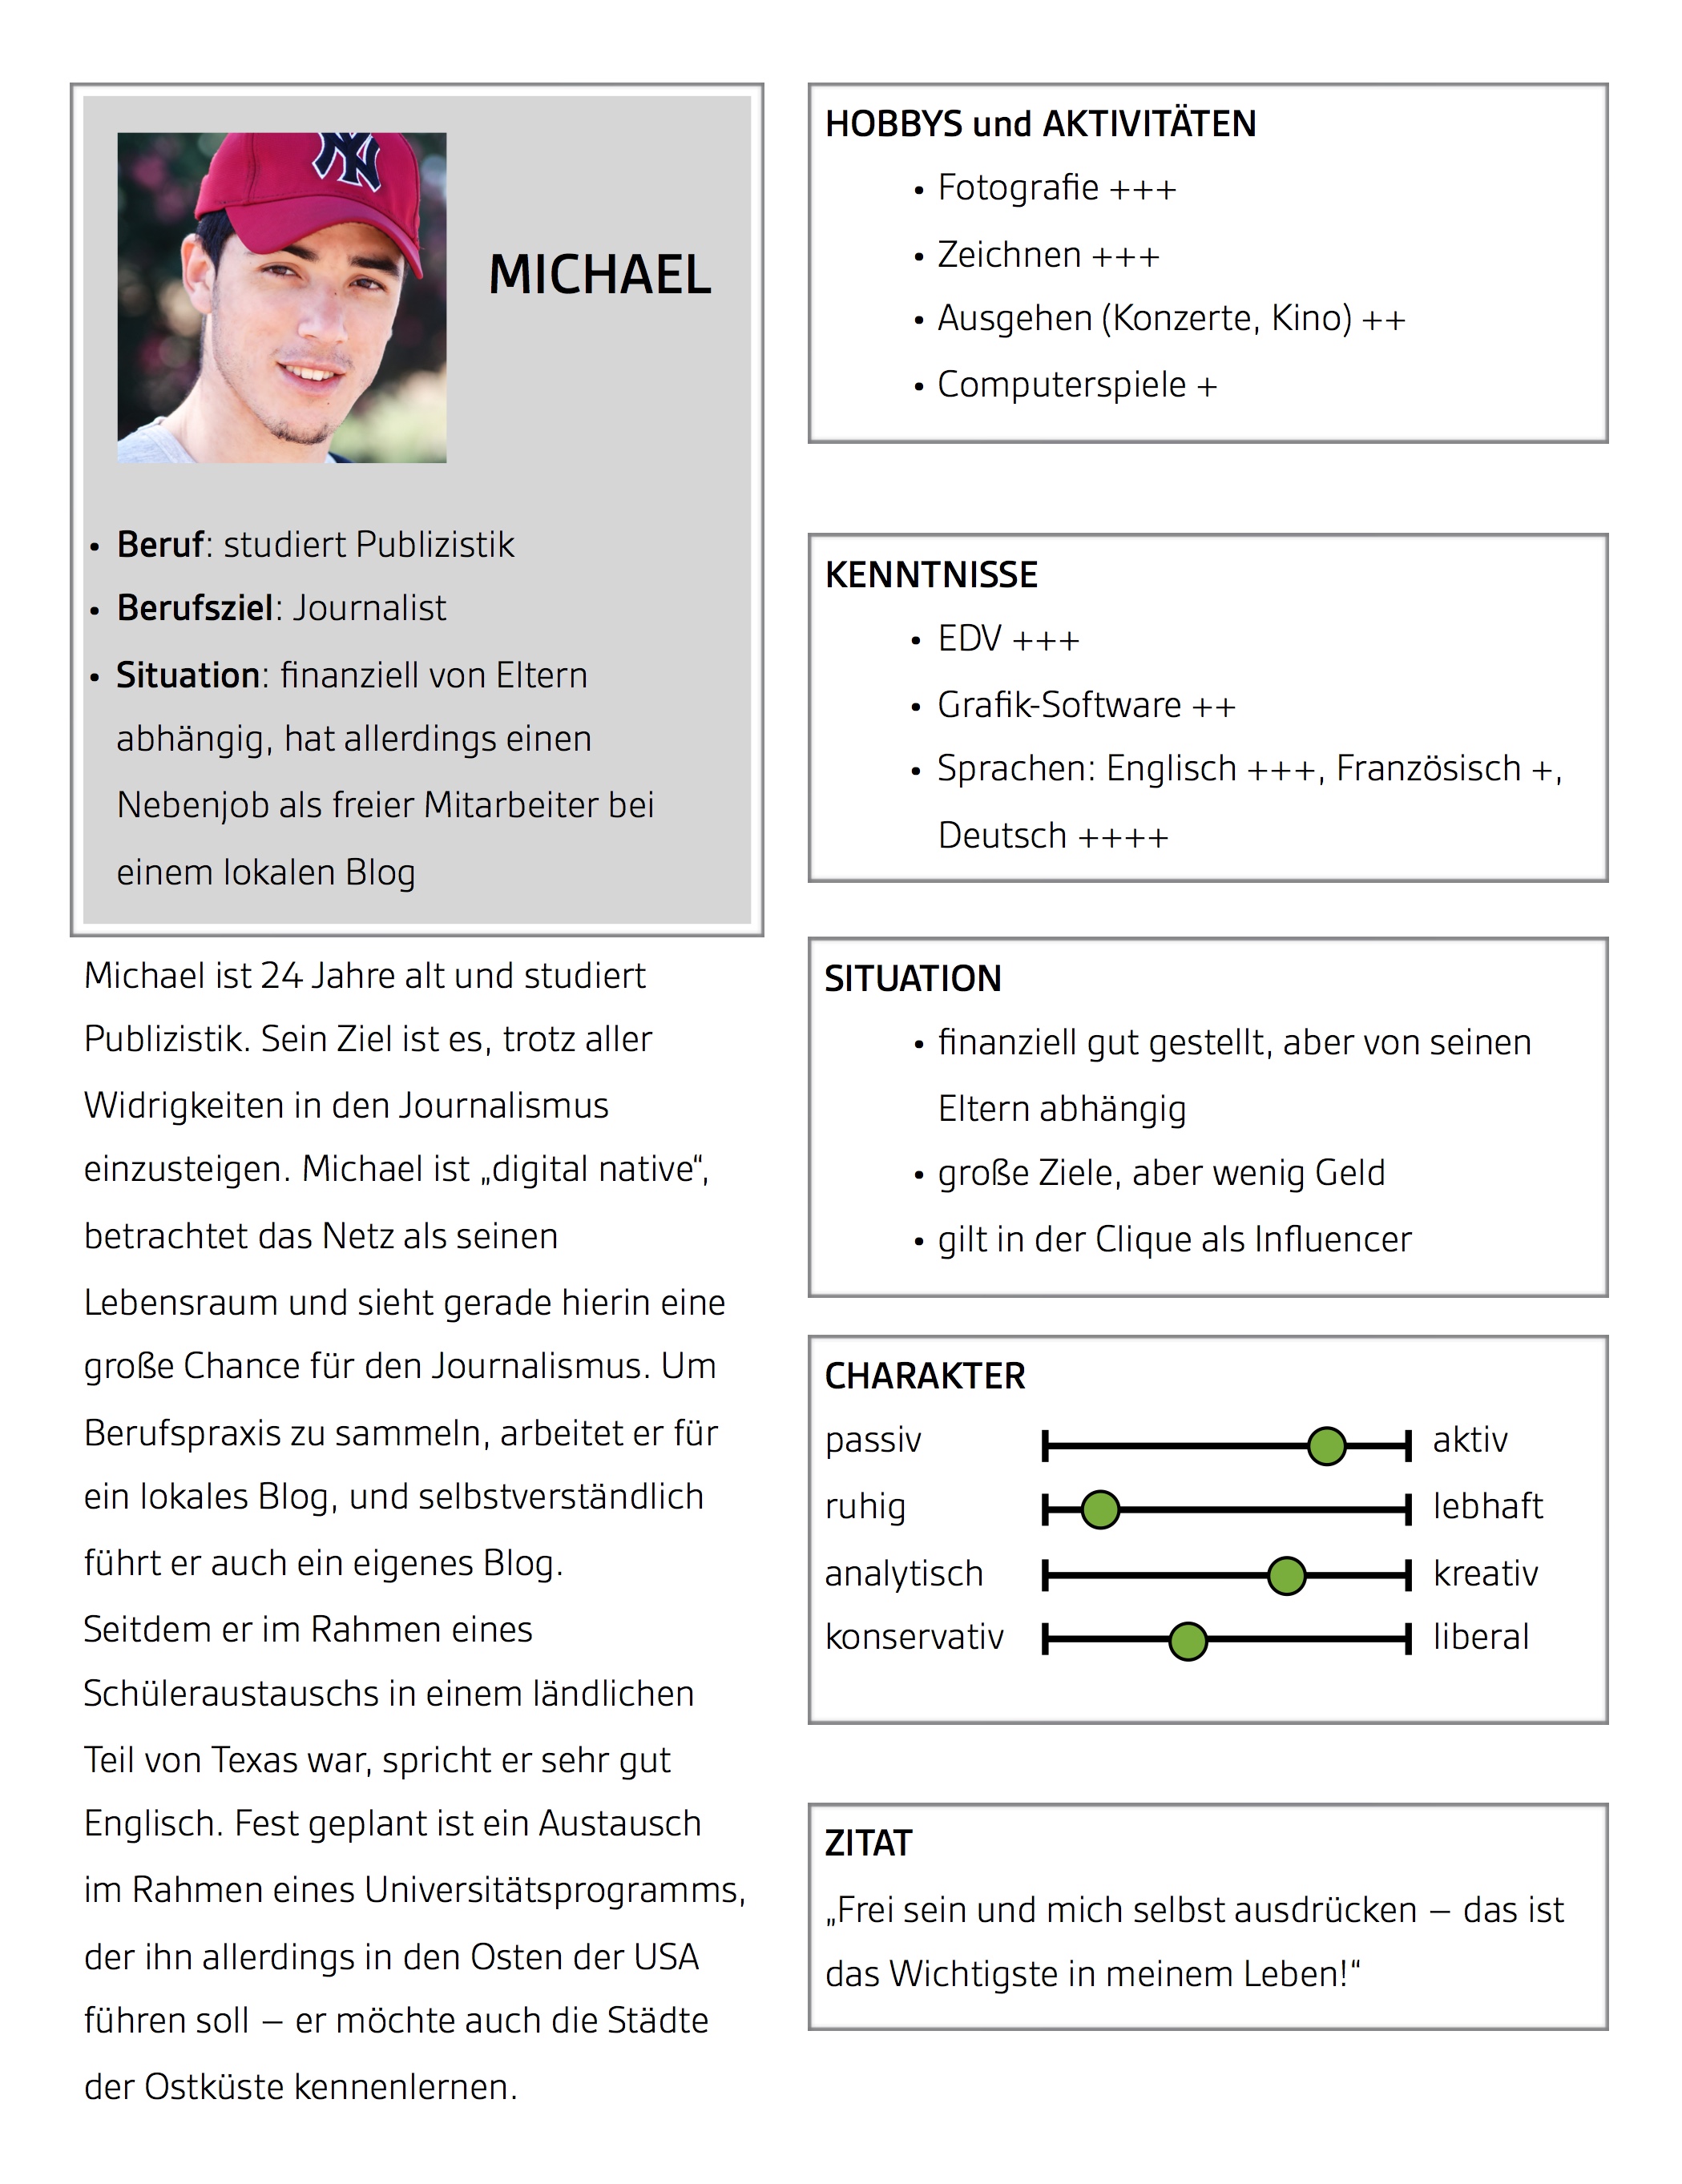 Beispiel für eine Persona namens „Michael“ mit detaillierten Informationen